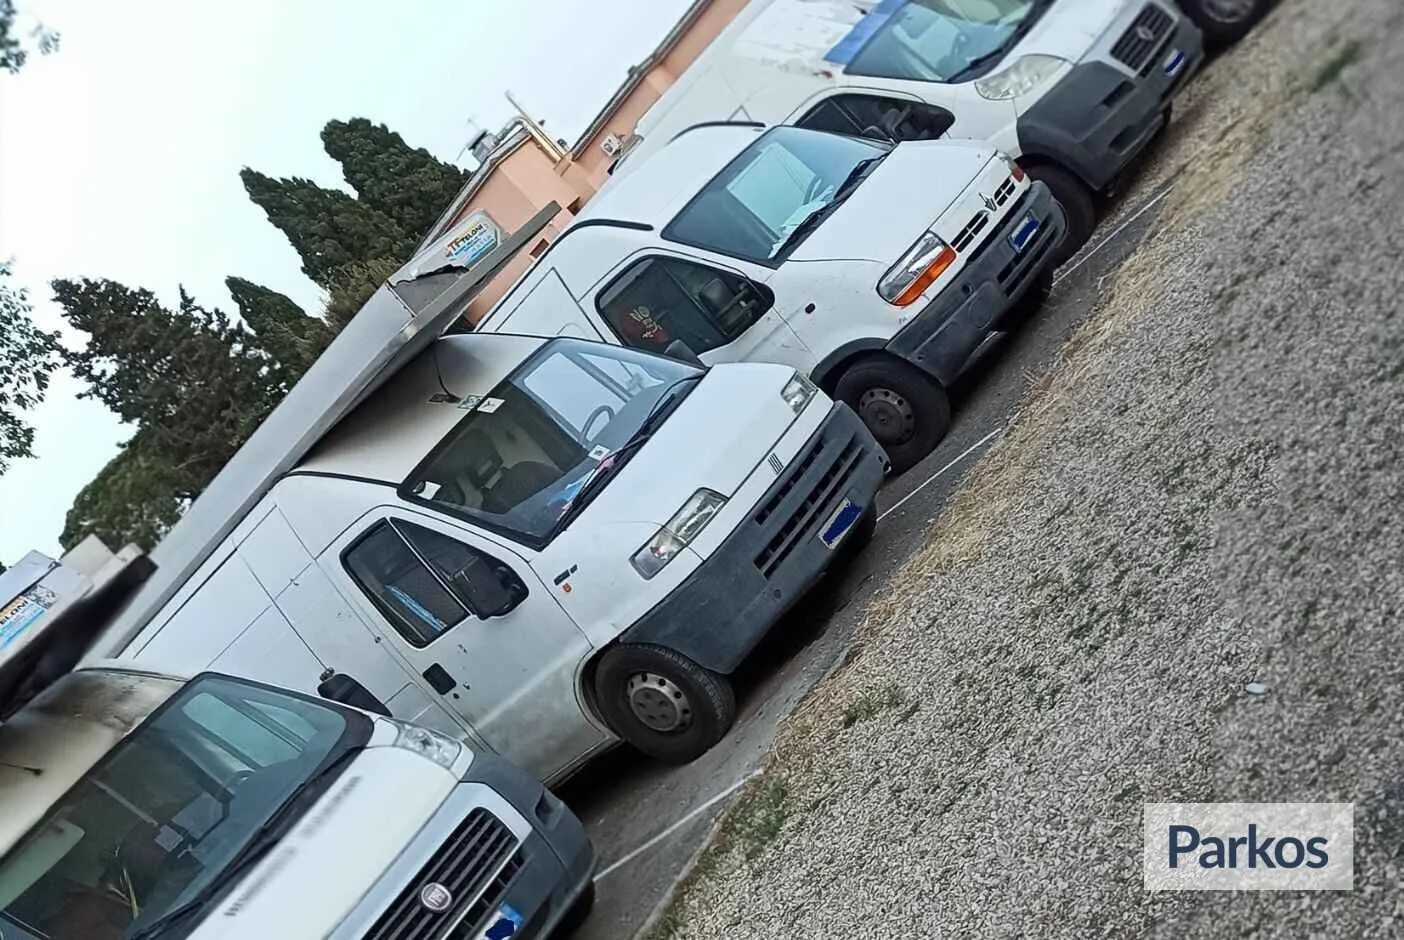 Economy Parking (Paga in parcheggio) - Parcheggio Ciampino - picture 1